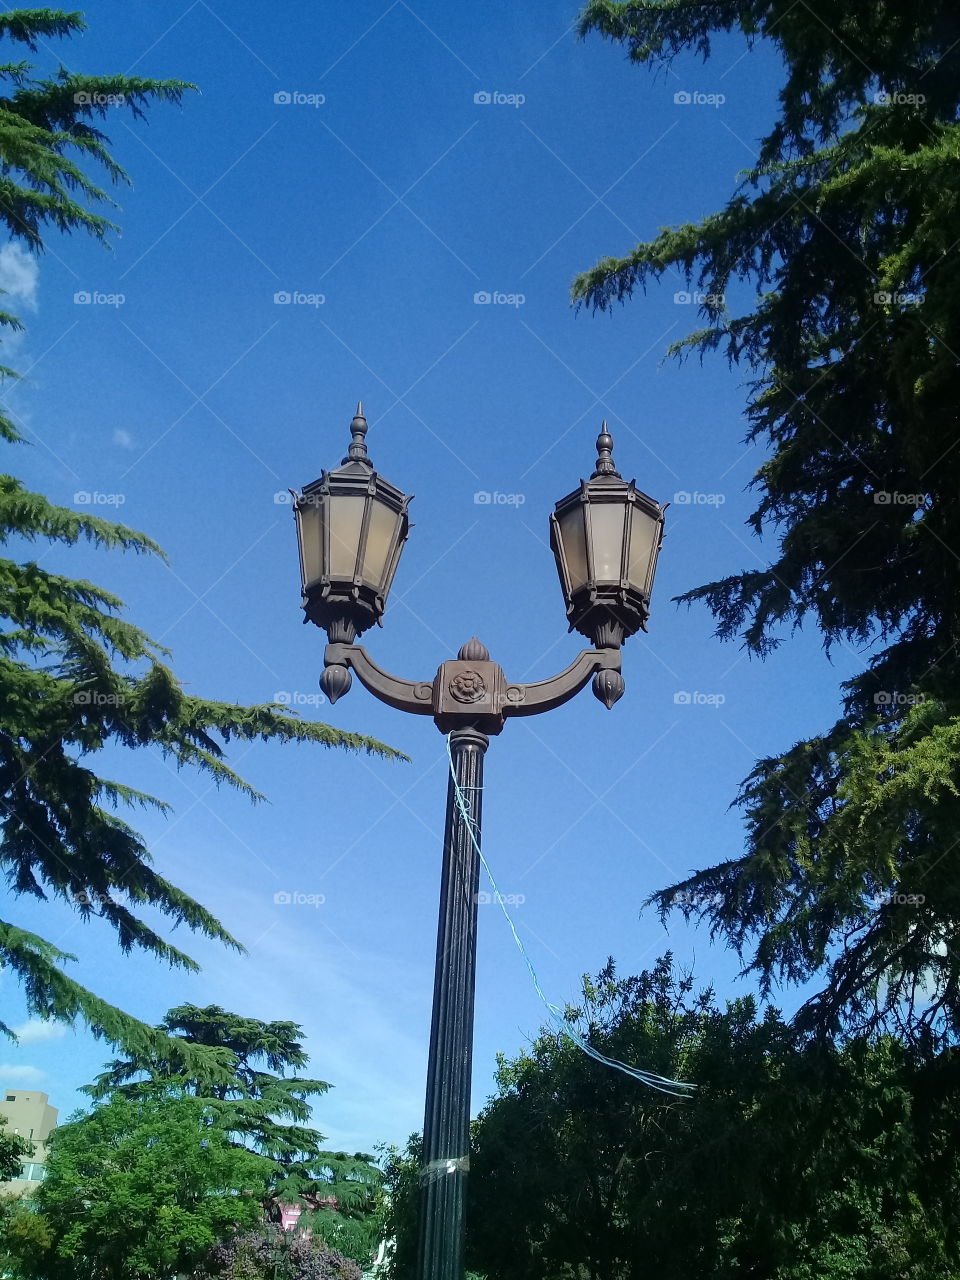 antiguo farol de iluminación de hierro macizo y vidrios originales destacando contra el cielo azul de verano.